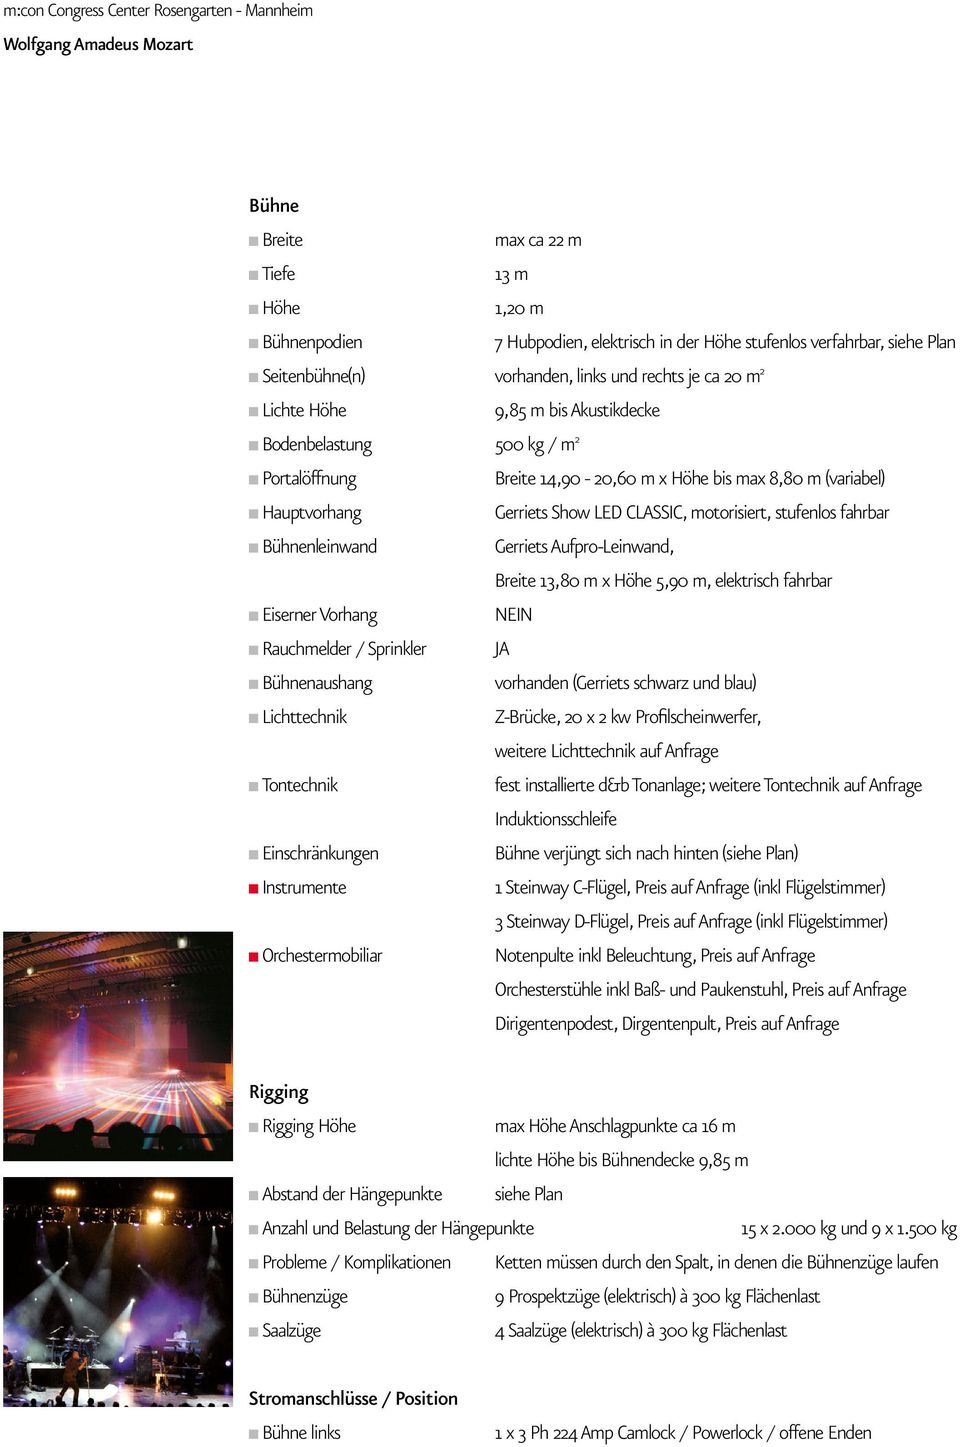 Bühnenleinwand Gerriets Aufpro-Leinwand, Breite 13,80 m x Höhe 5,90 m, elektrisch fahrbar Eiserner Vorhang NEIN Rauchmelder / Sprinkler JA Bühnenaushang vorhanden (Gerriets schwarz und blau)